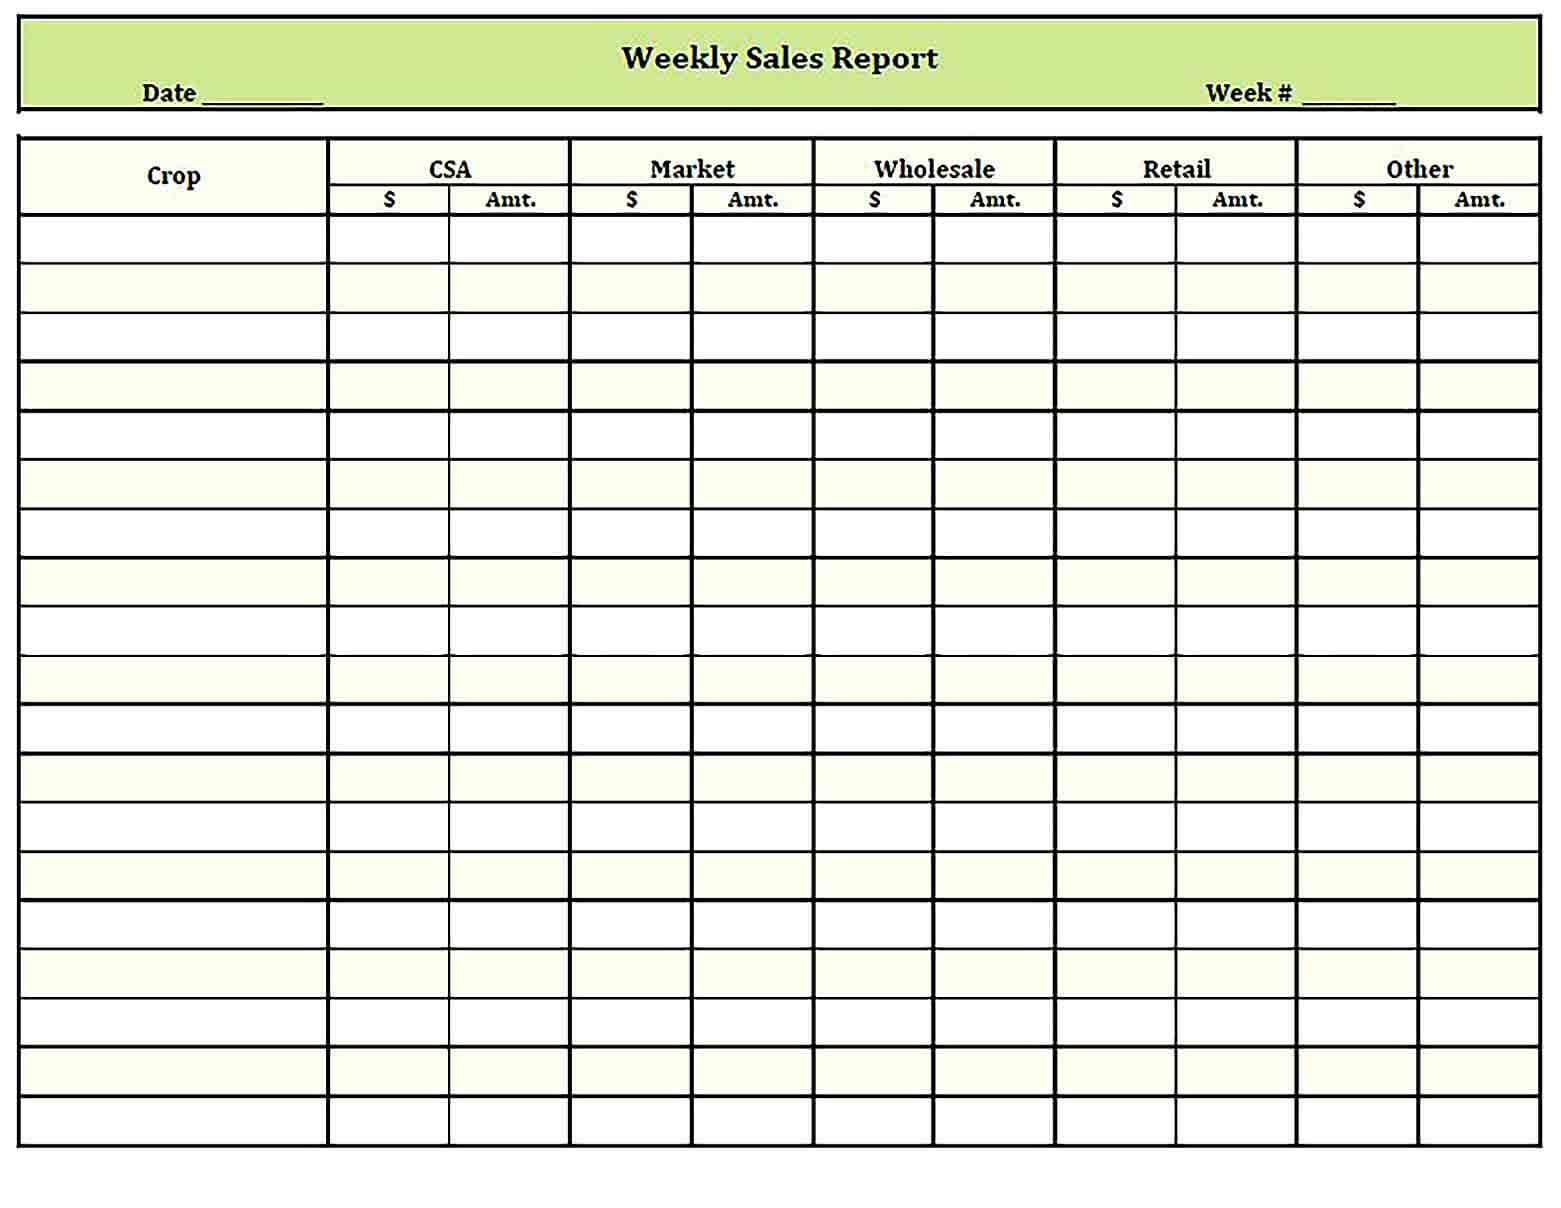 Sample weekly sales report template1